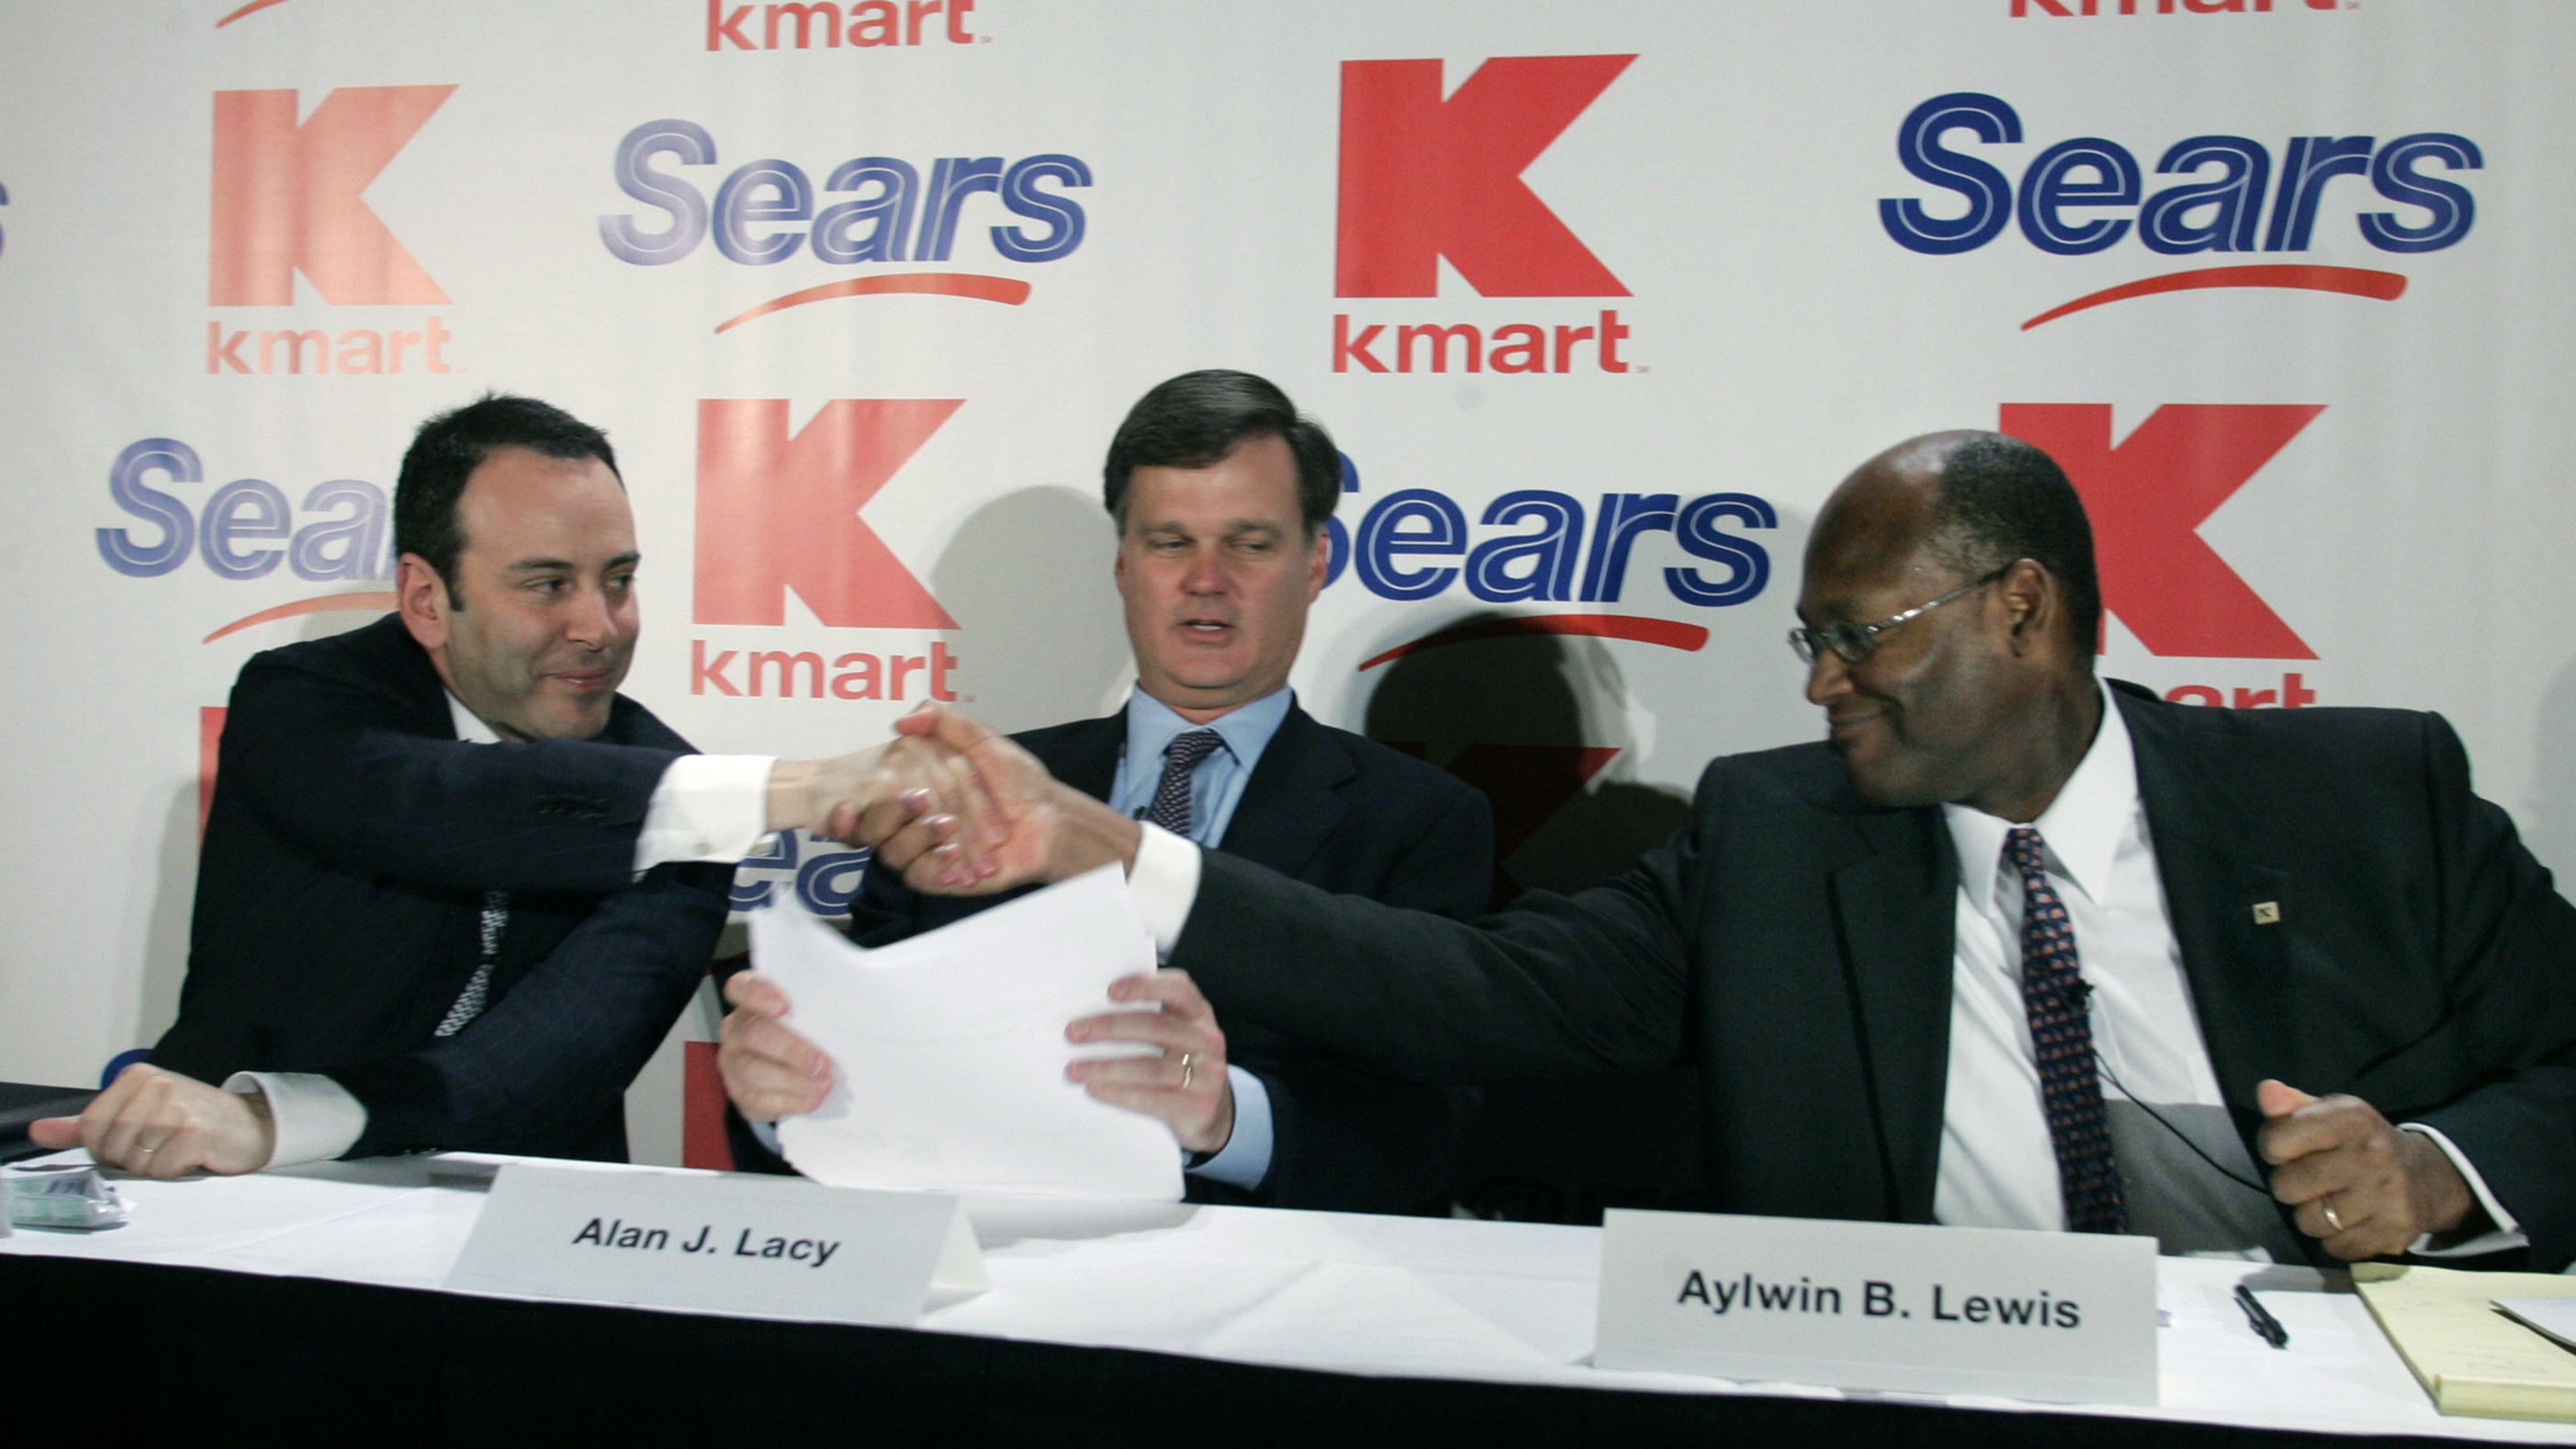 El presidente de Kmart, Edward Lampert, junto al presidente de Sears, Alan Lacy, y el CEO de Kmart, Aylwin Lewis